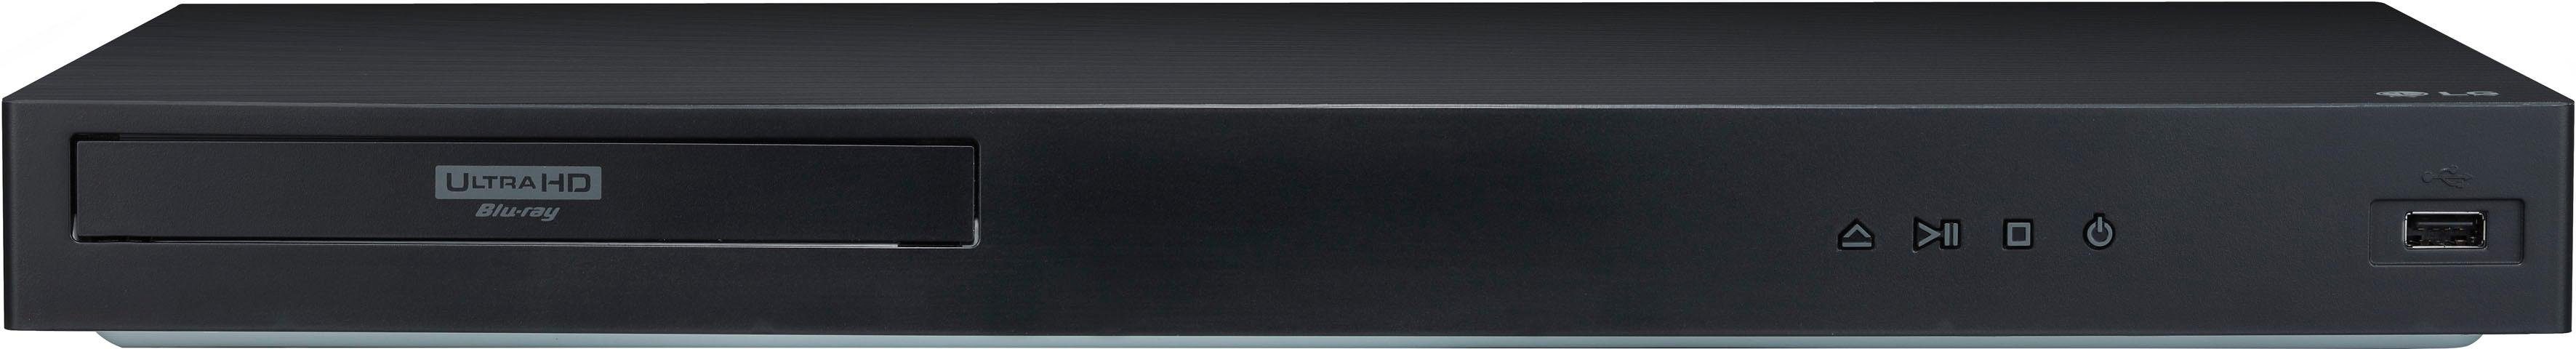 LG UBK90 HD, Ultra WLAN, Blu-ray-Player (4k 4K Upscaling)